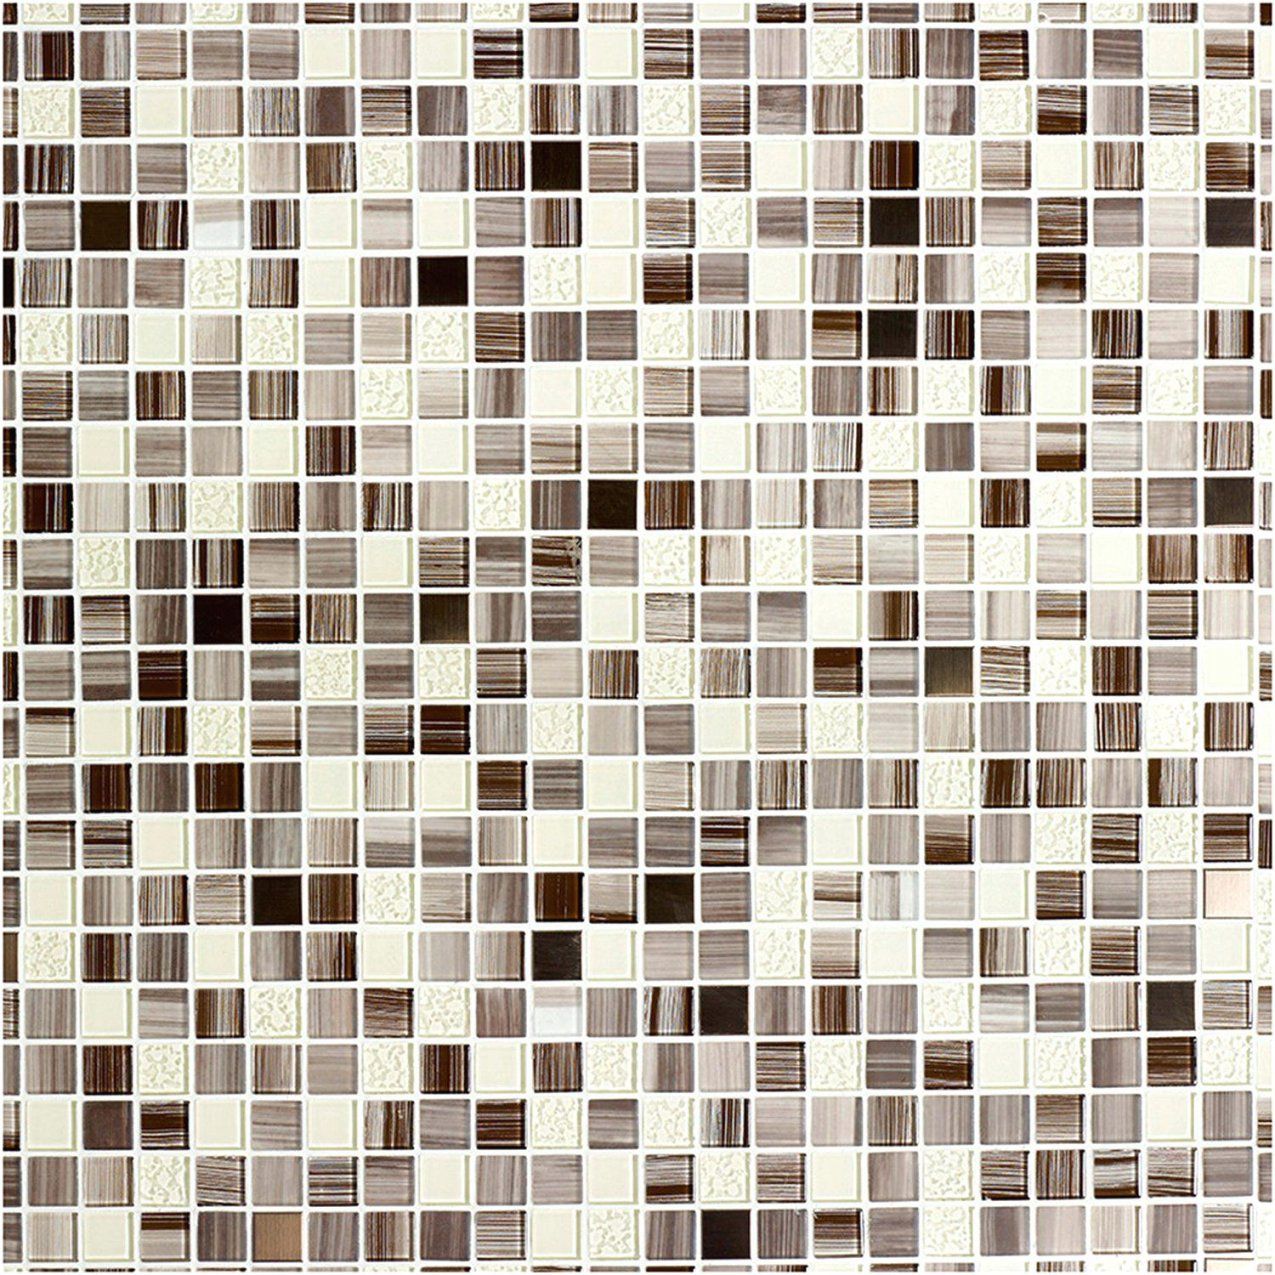 Abwaschbare Tapeten Für Die Küche 19 Selbstklebende Tapete Obi Tesa von Selbstklebende Tapete Für Küche Bild